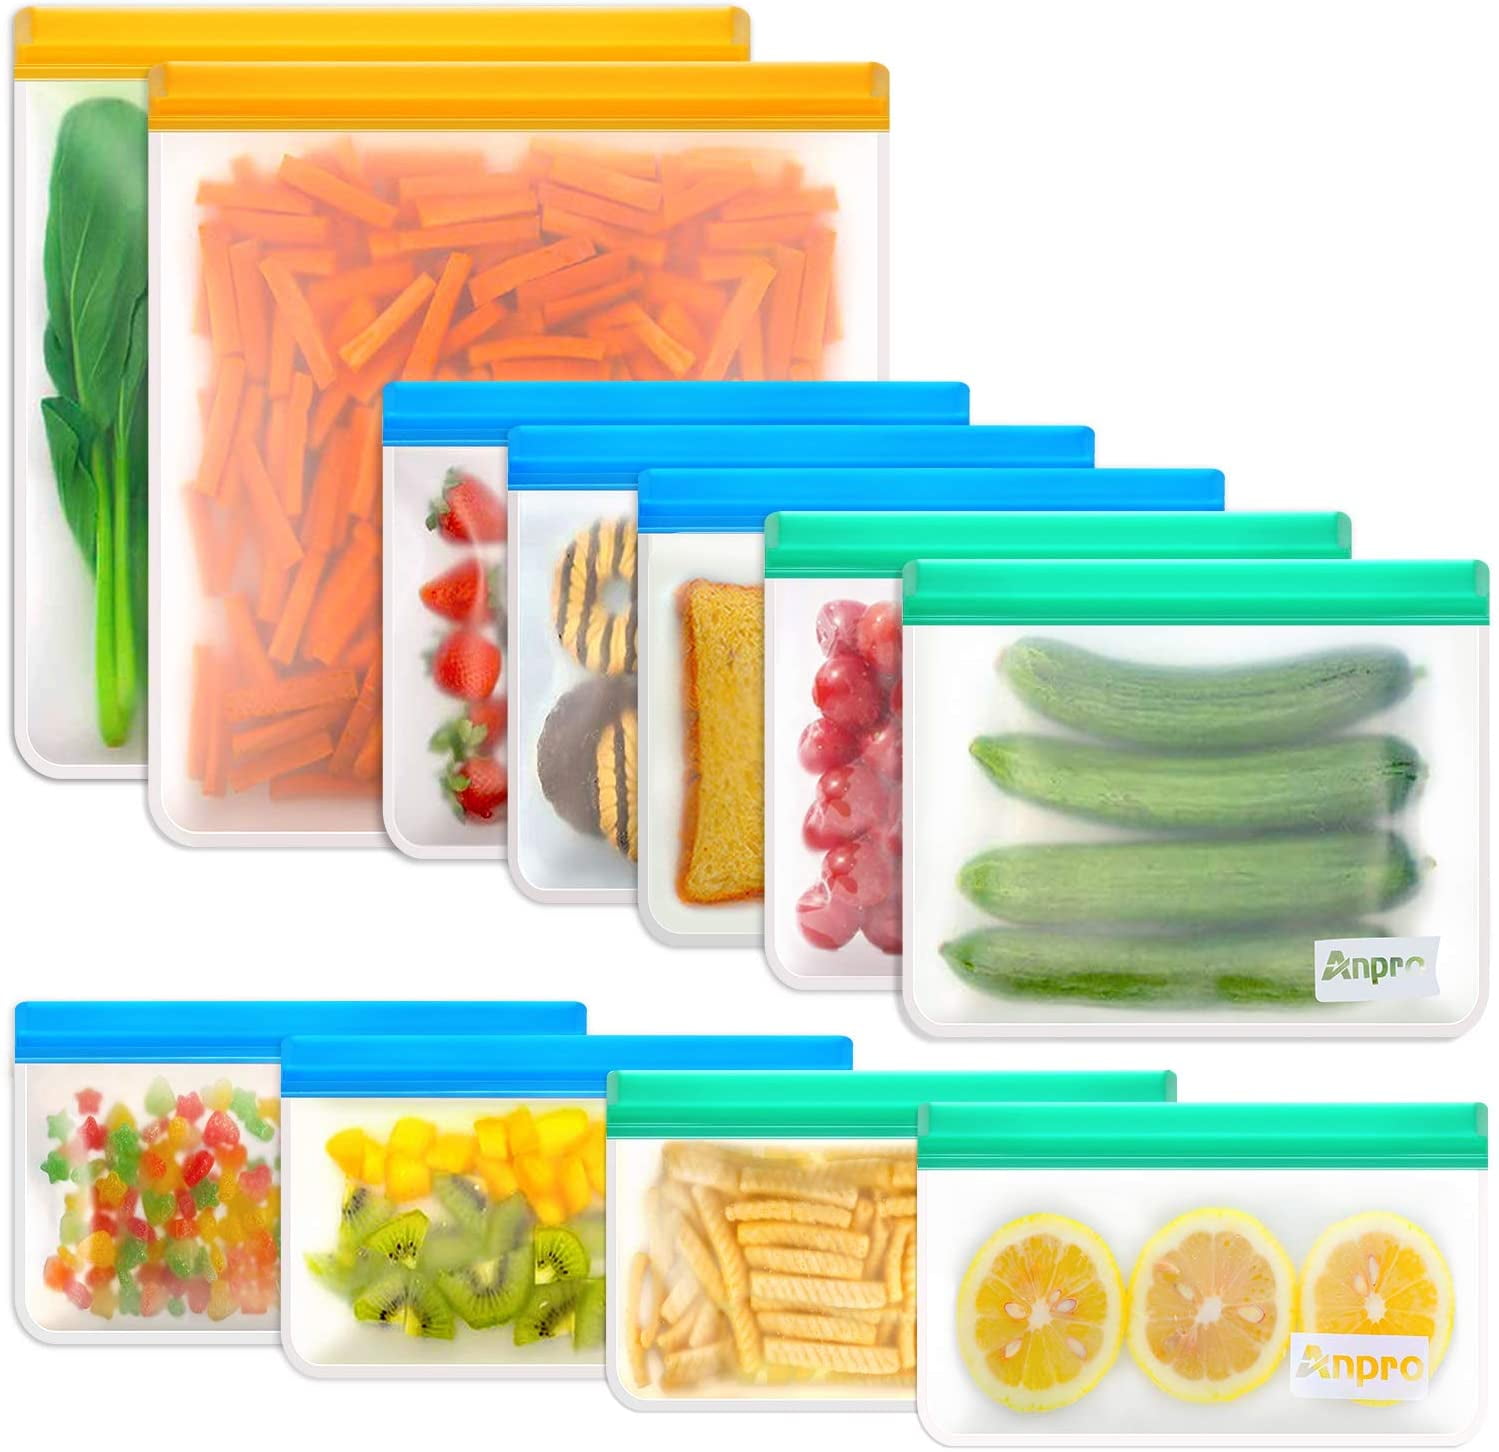 O2frepak Reusable Sous Vide Bags 15 Pcs Zip Lock Bag for Food